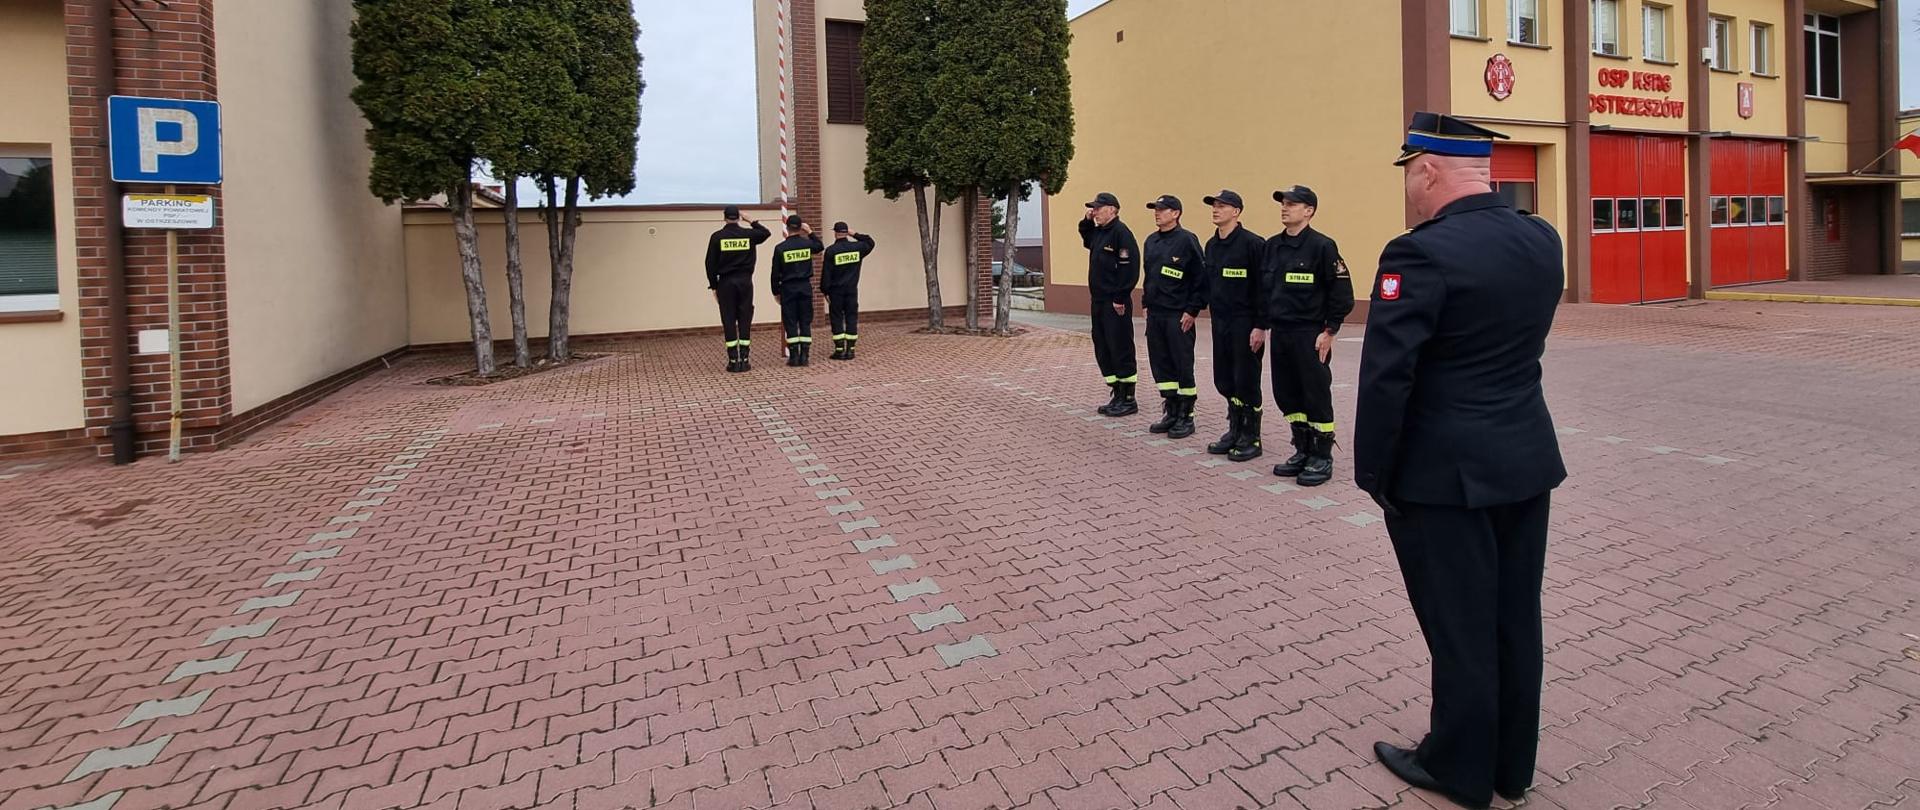 Strażacy stoją na placu manewrowym podczas obchodów święta niepodległości